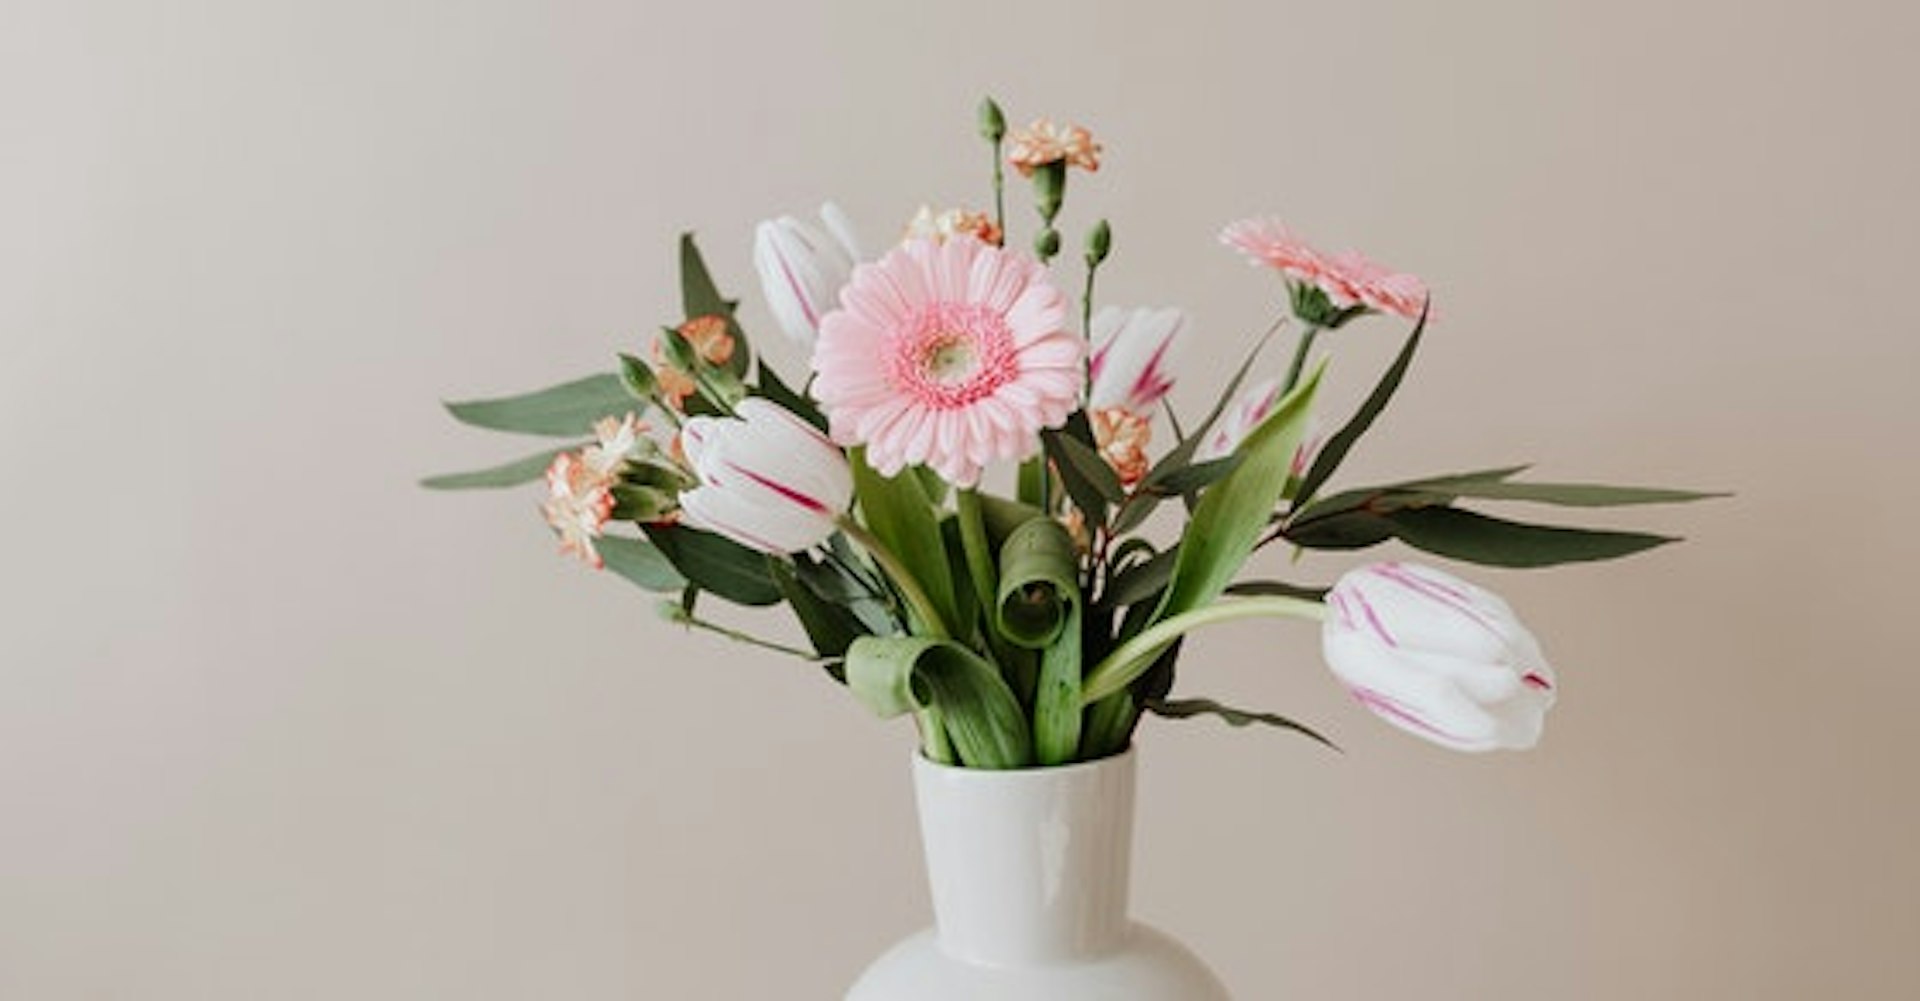 Aprende a hacer arreglos florales sencillos y ponle color a tu entorno